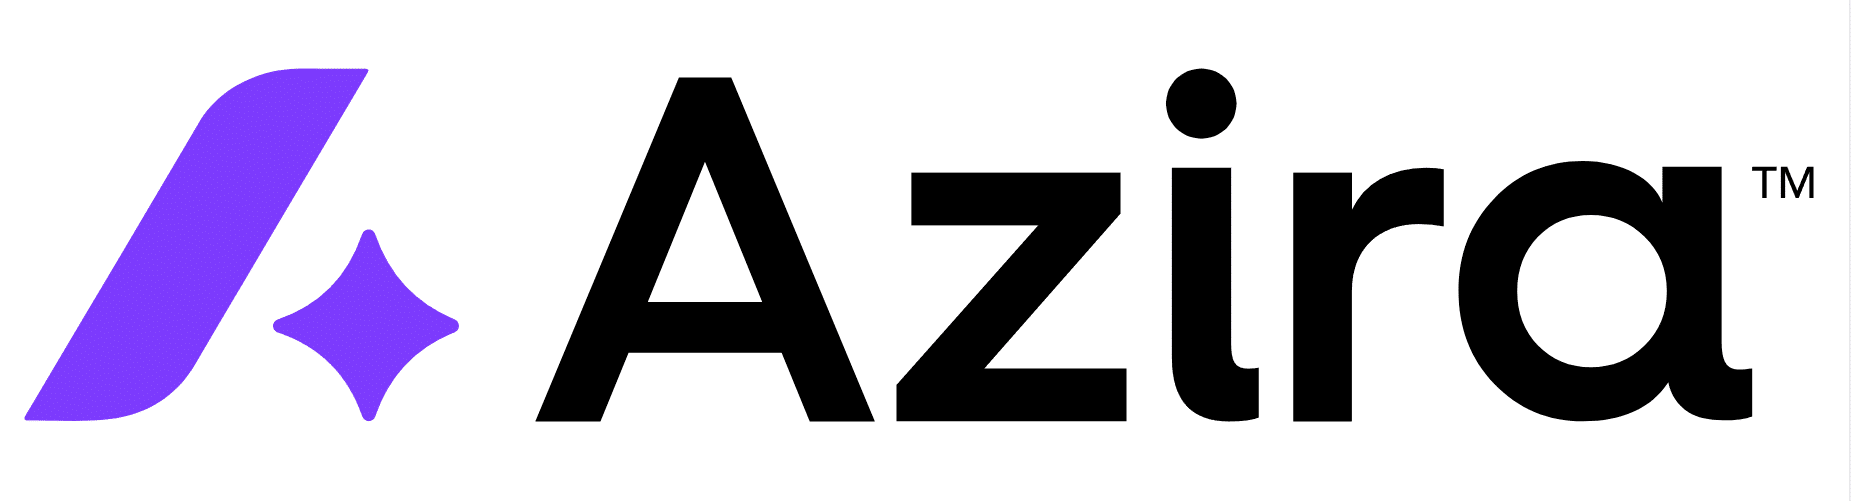 Azira